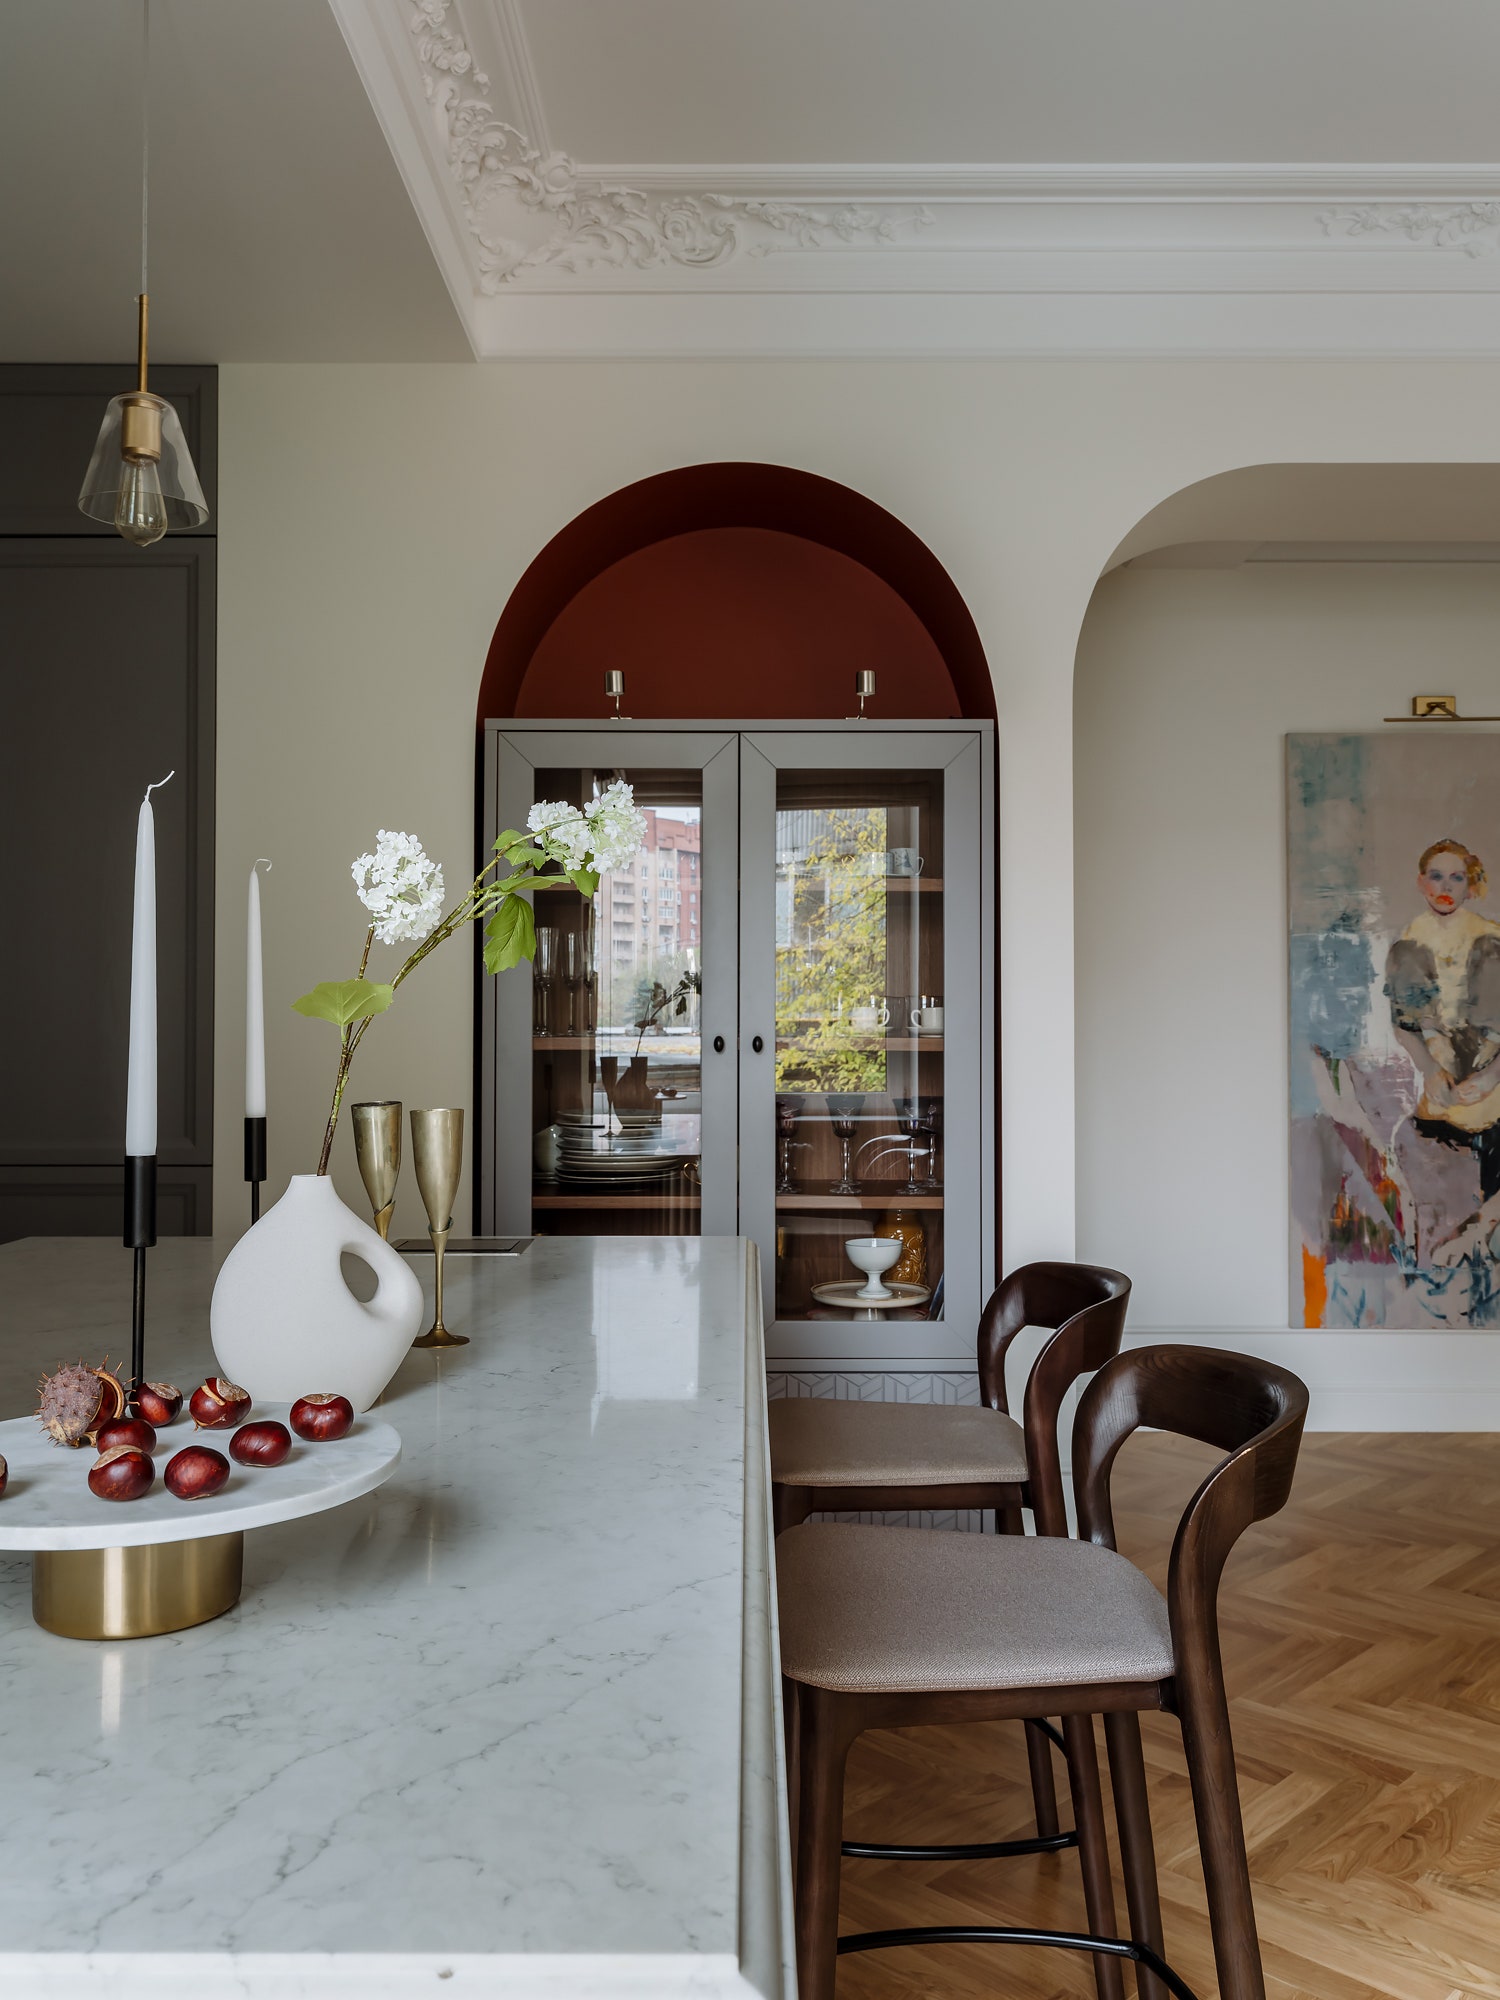 Столовая группа. Мебель “Кухни Альфадизайн” витрина Prestige de France.